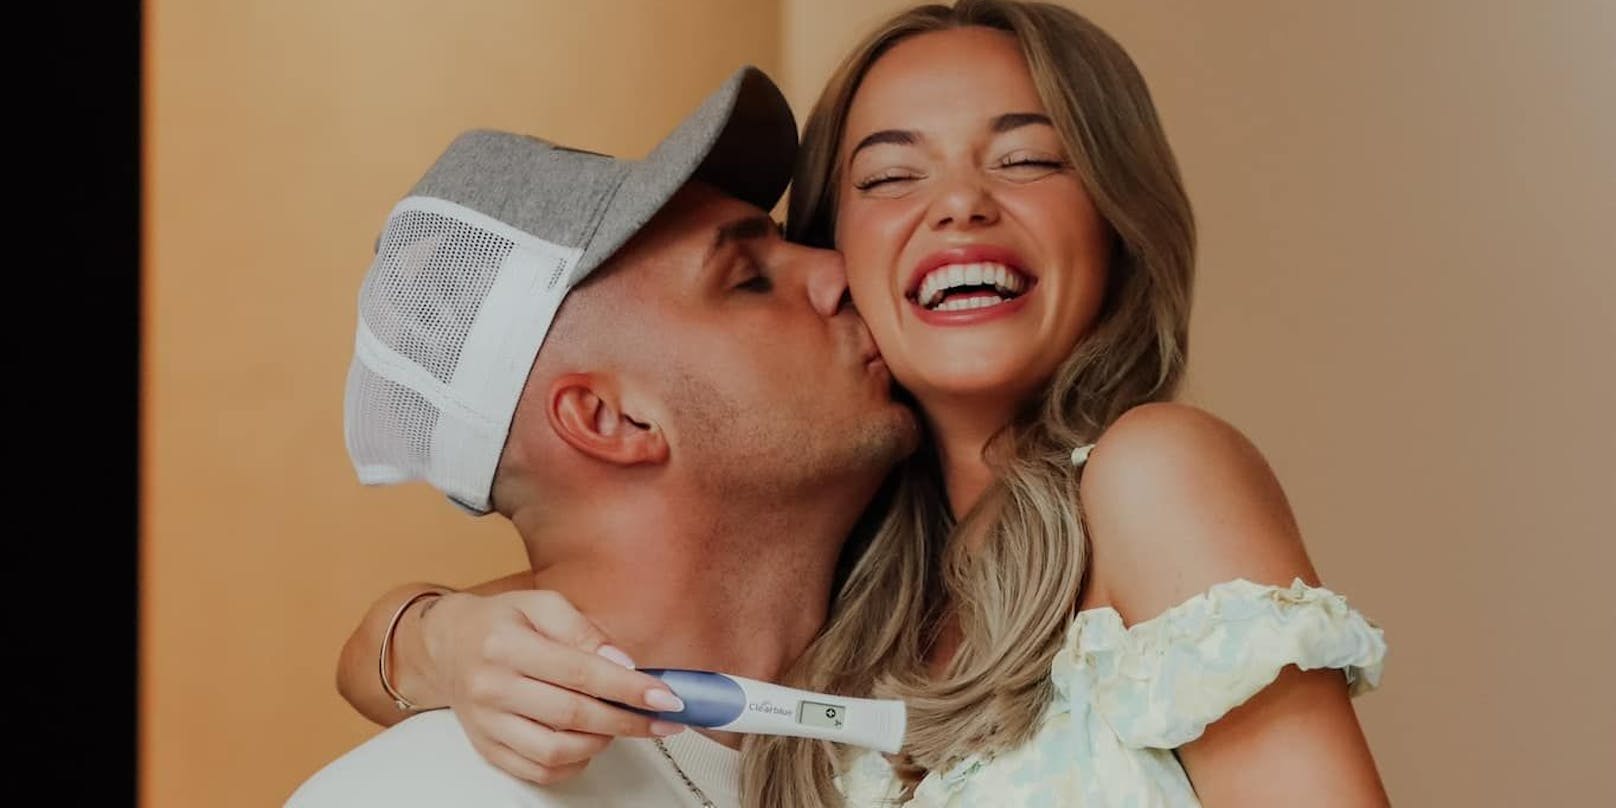 Pietro Lombardi und seine Freundin Laura Maria Rypa erwarten ein Baby. Das gab das Paar am 19. August auf Instagram bekannt.